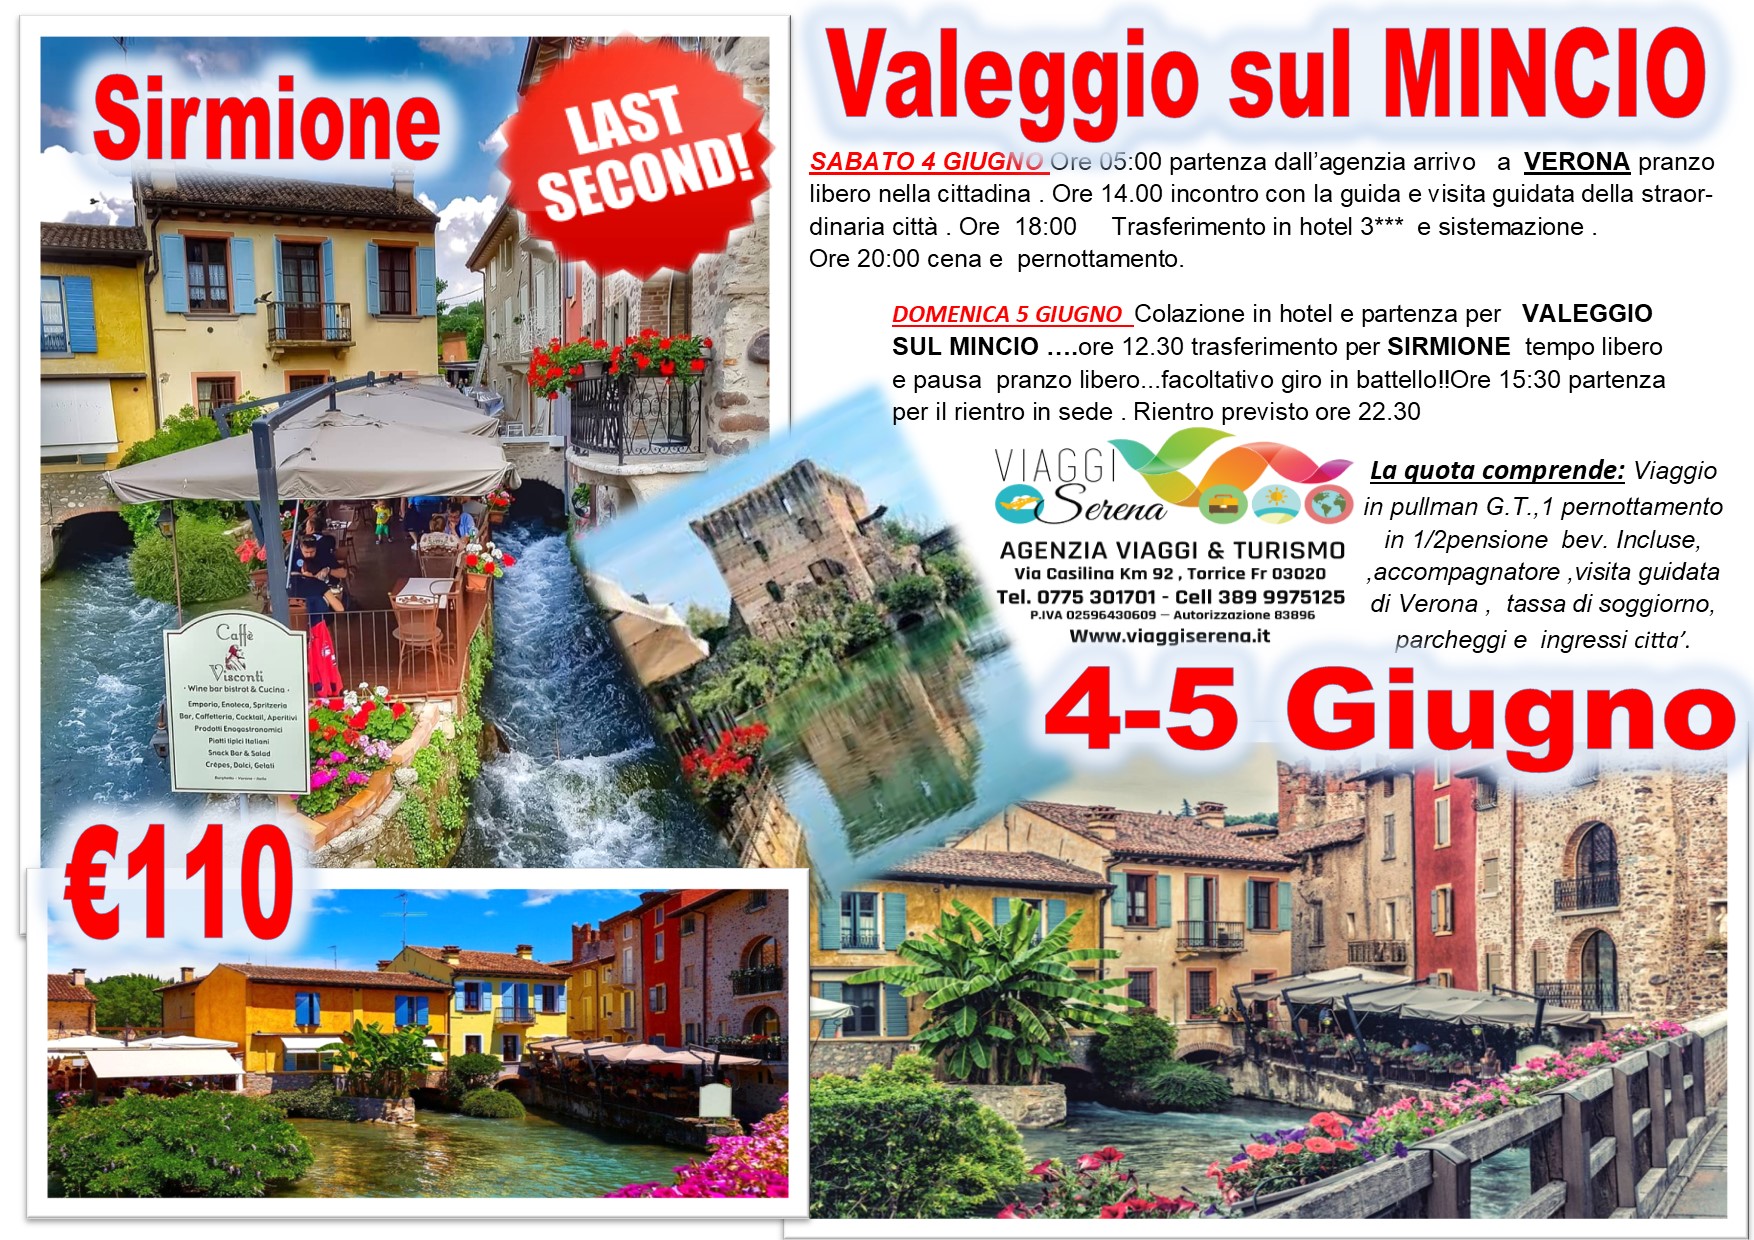 Viaggi di Gruppo: Valeggio sul Mincio, Sirmione & Verona 4-5 Giugno €110,00